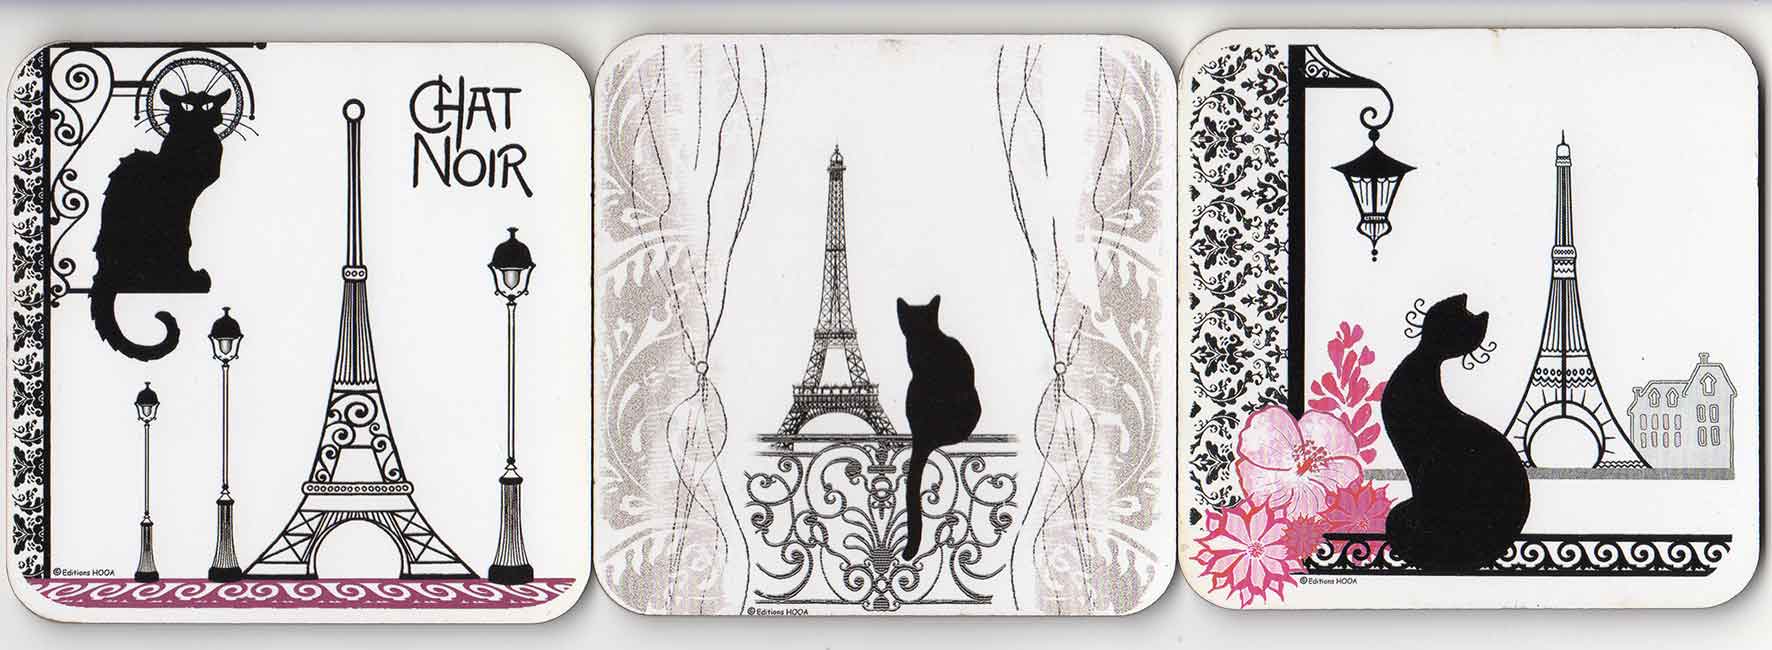 Les Chats de Paris coasters by Editions Hooa